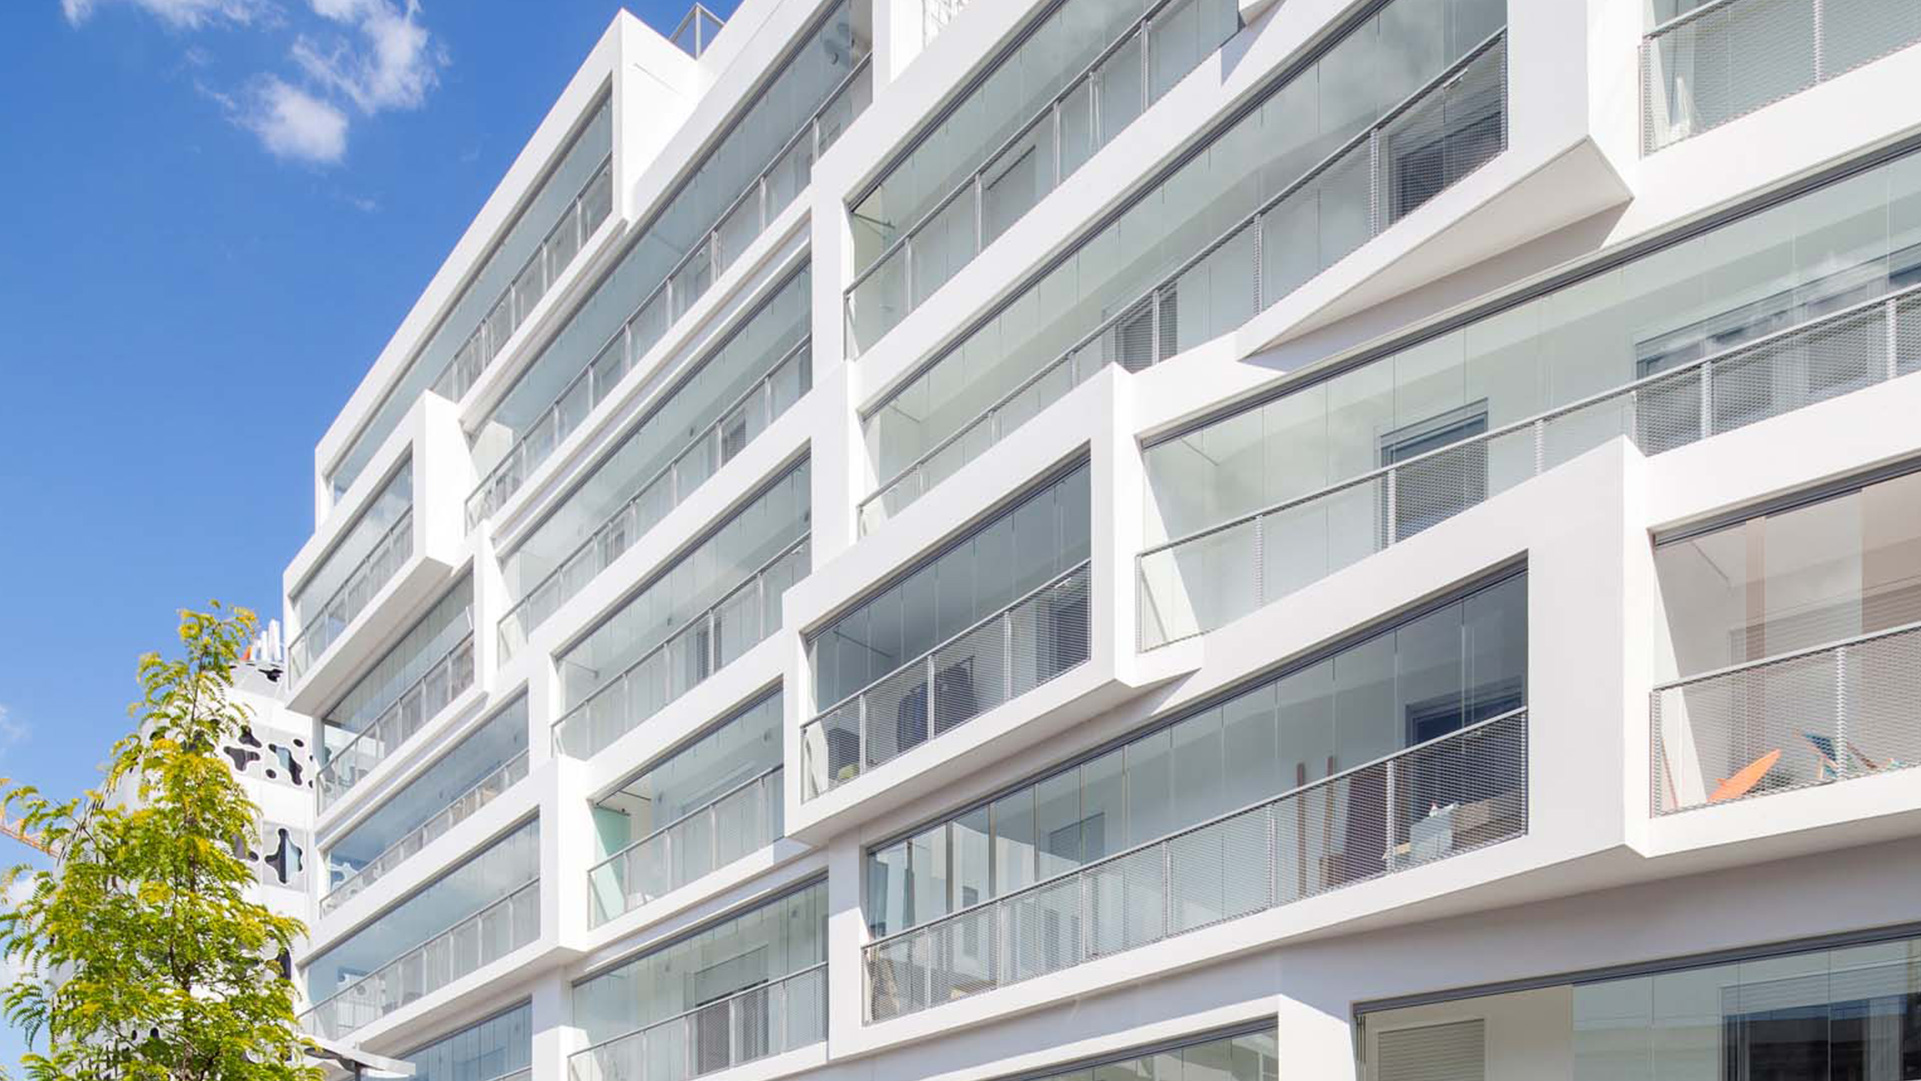 Neubau mit Balkonverglasungen in Frankreich